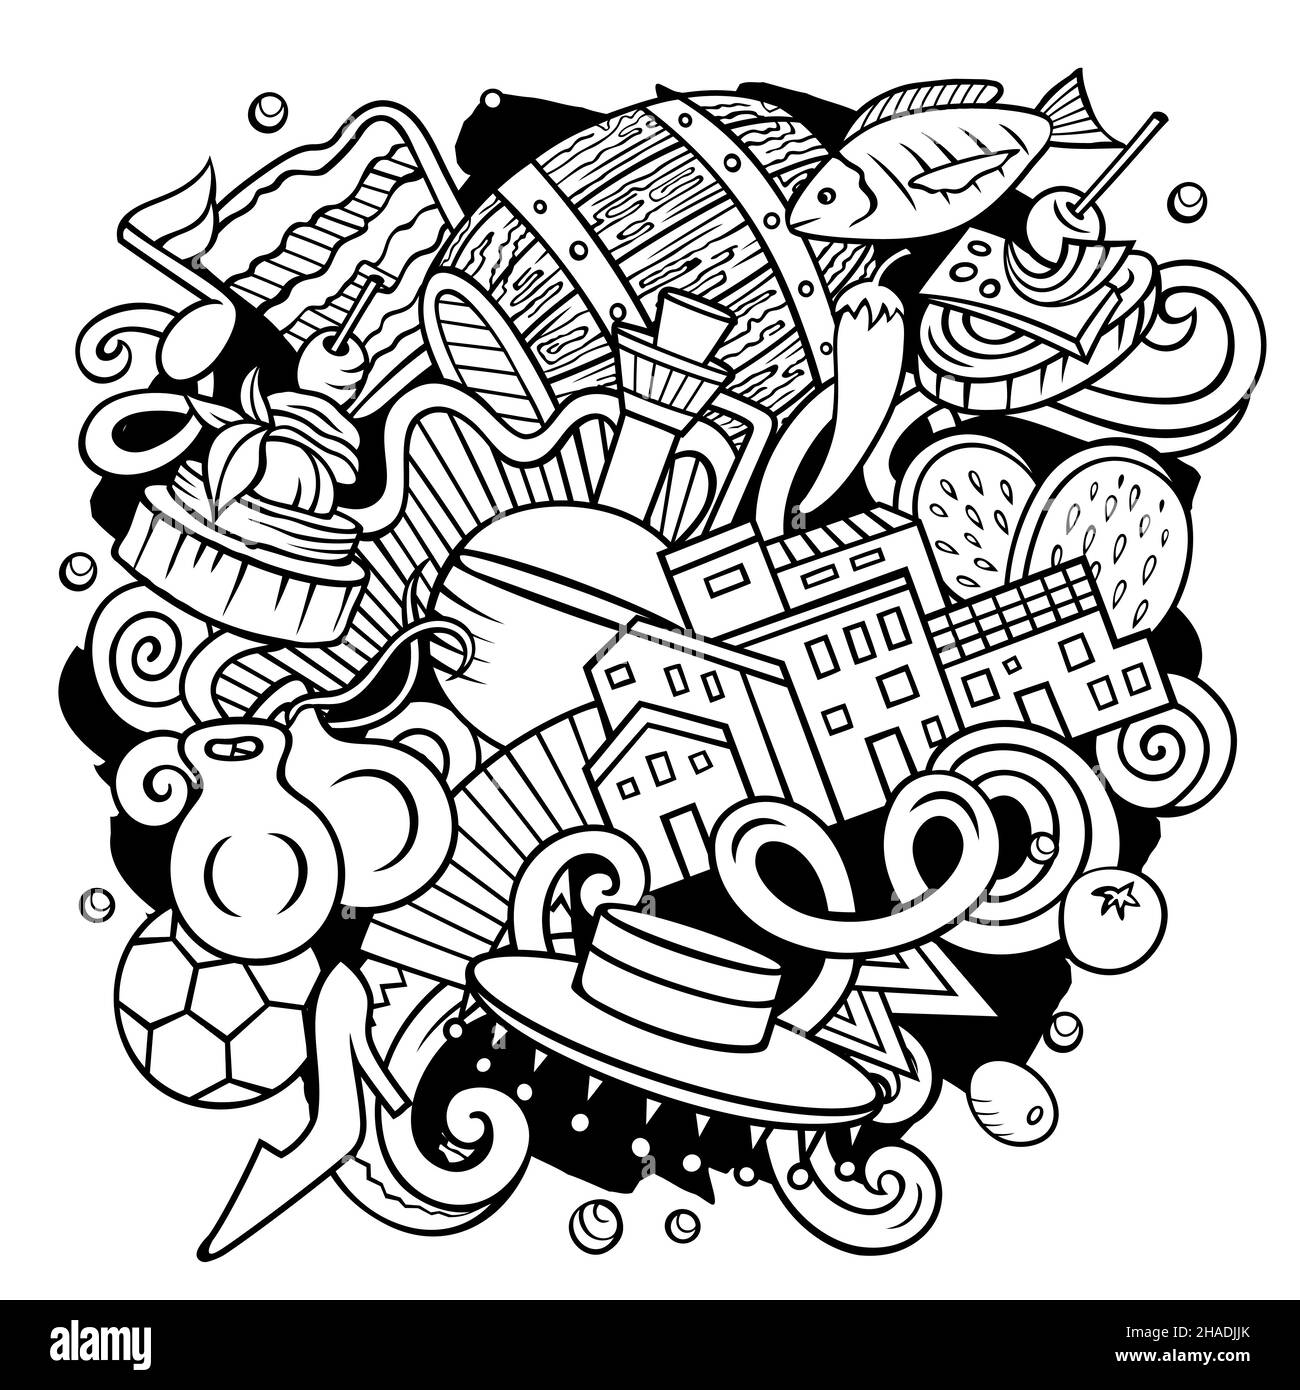 Spanien handgezeichnete Cartoon Doodle Illustration. Lustige spanische Elemente und Objekte Design. Kreative Kunst Vektor Hintergrund. Stock Vektor